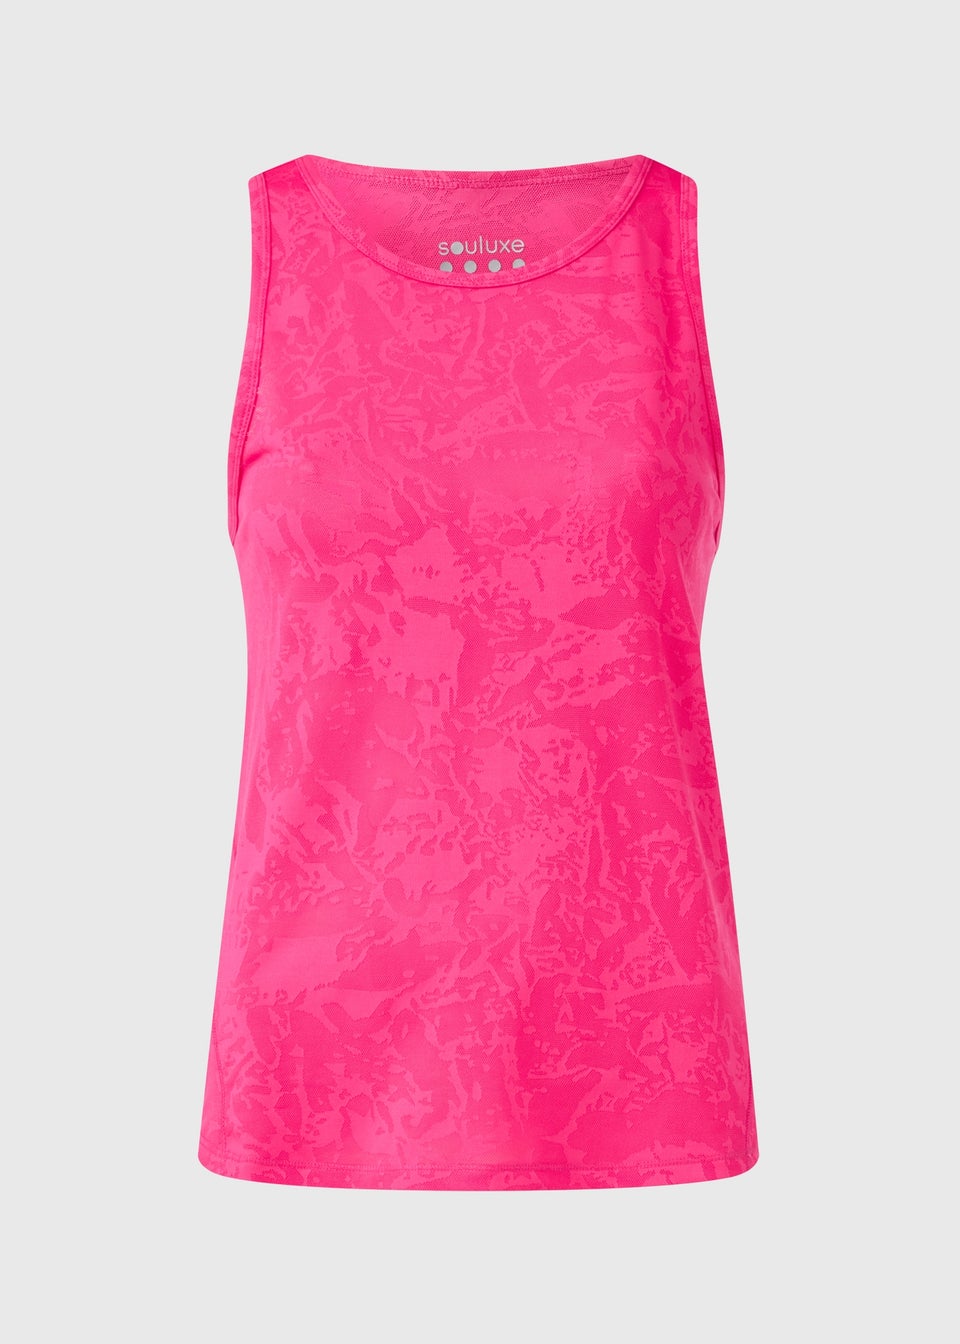 Souluxe Pink Jacquard Vest